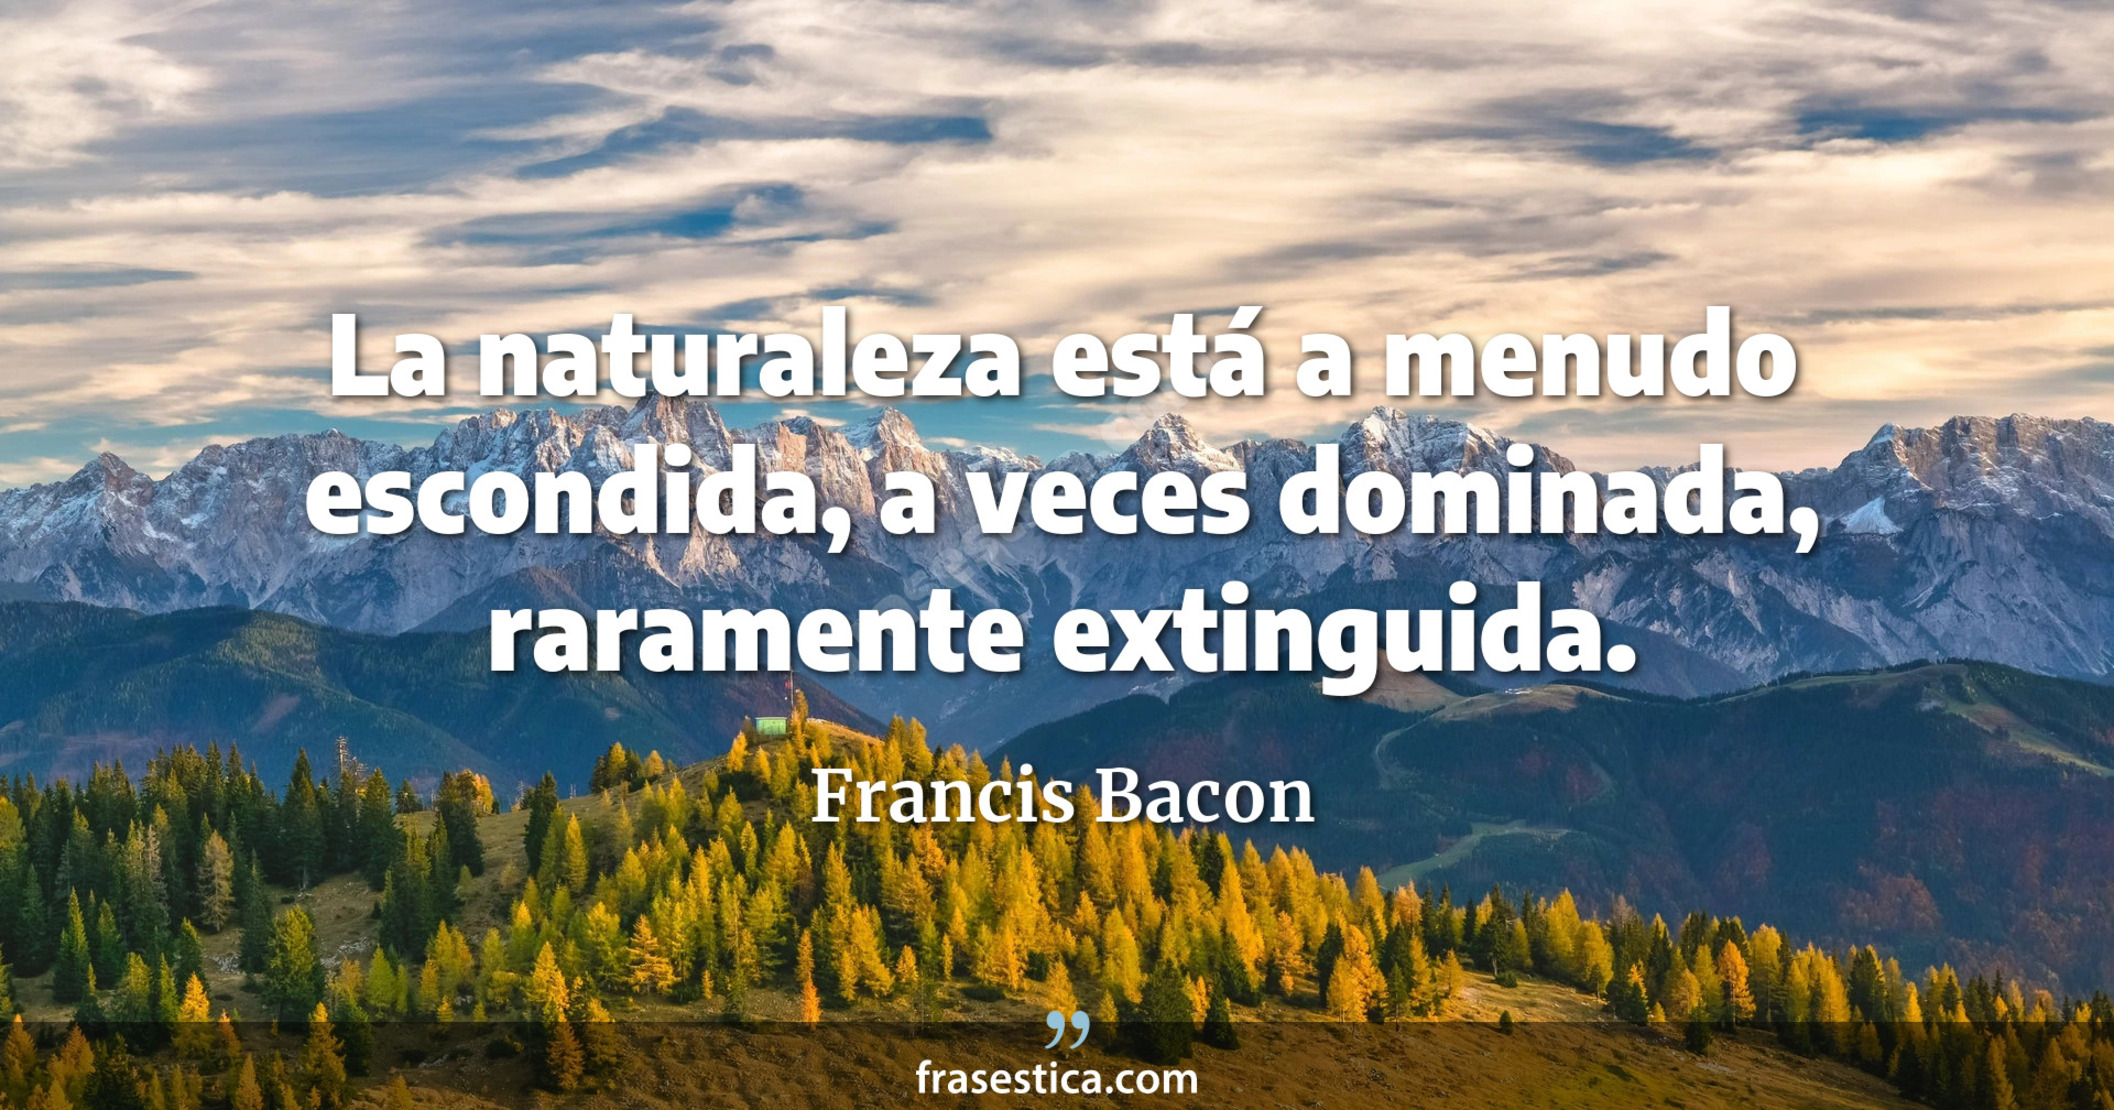 La naturaleza está a menudo escondida, a veces dominada, raramente extinguida. - Francis Bacon